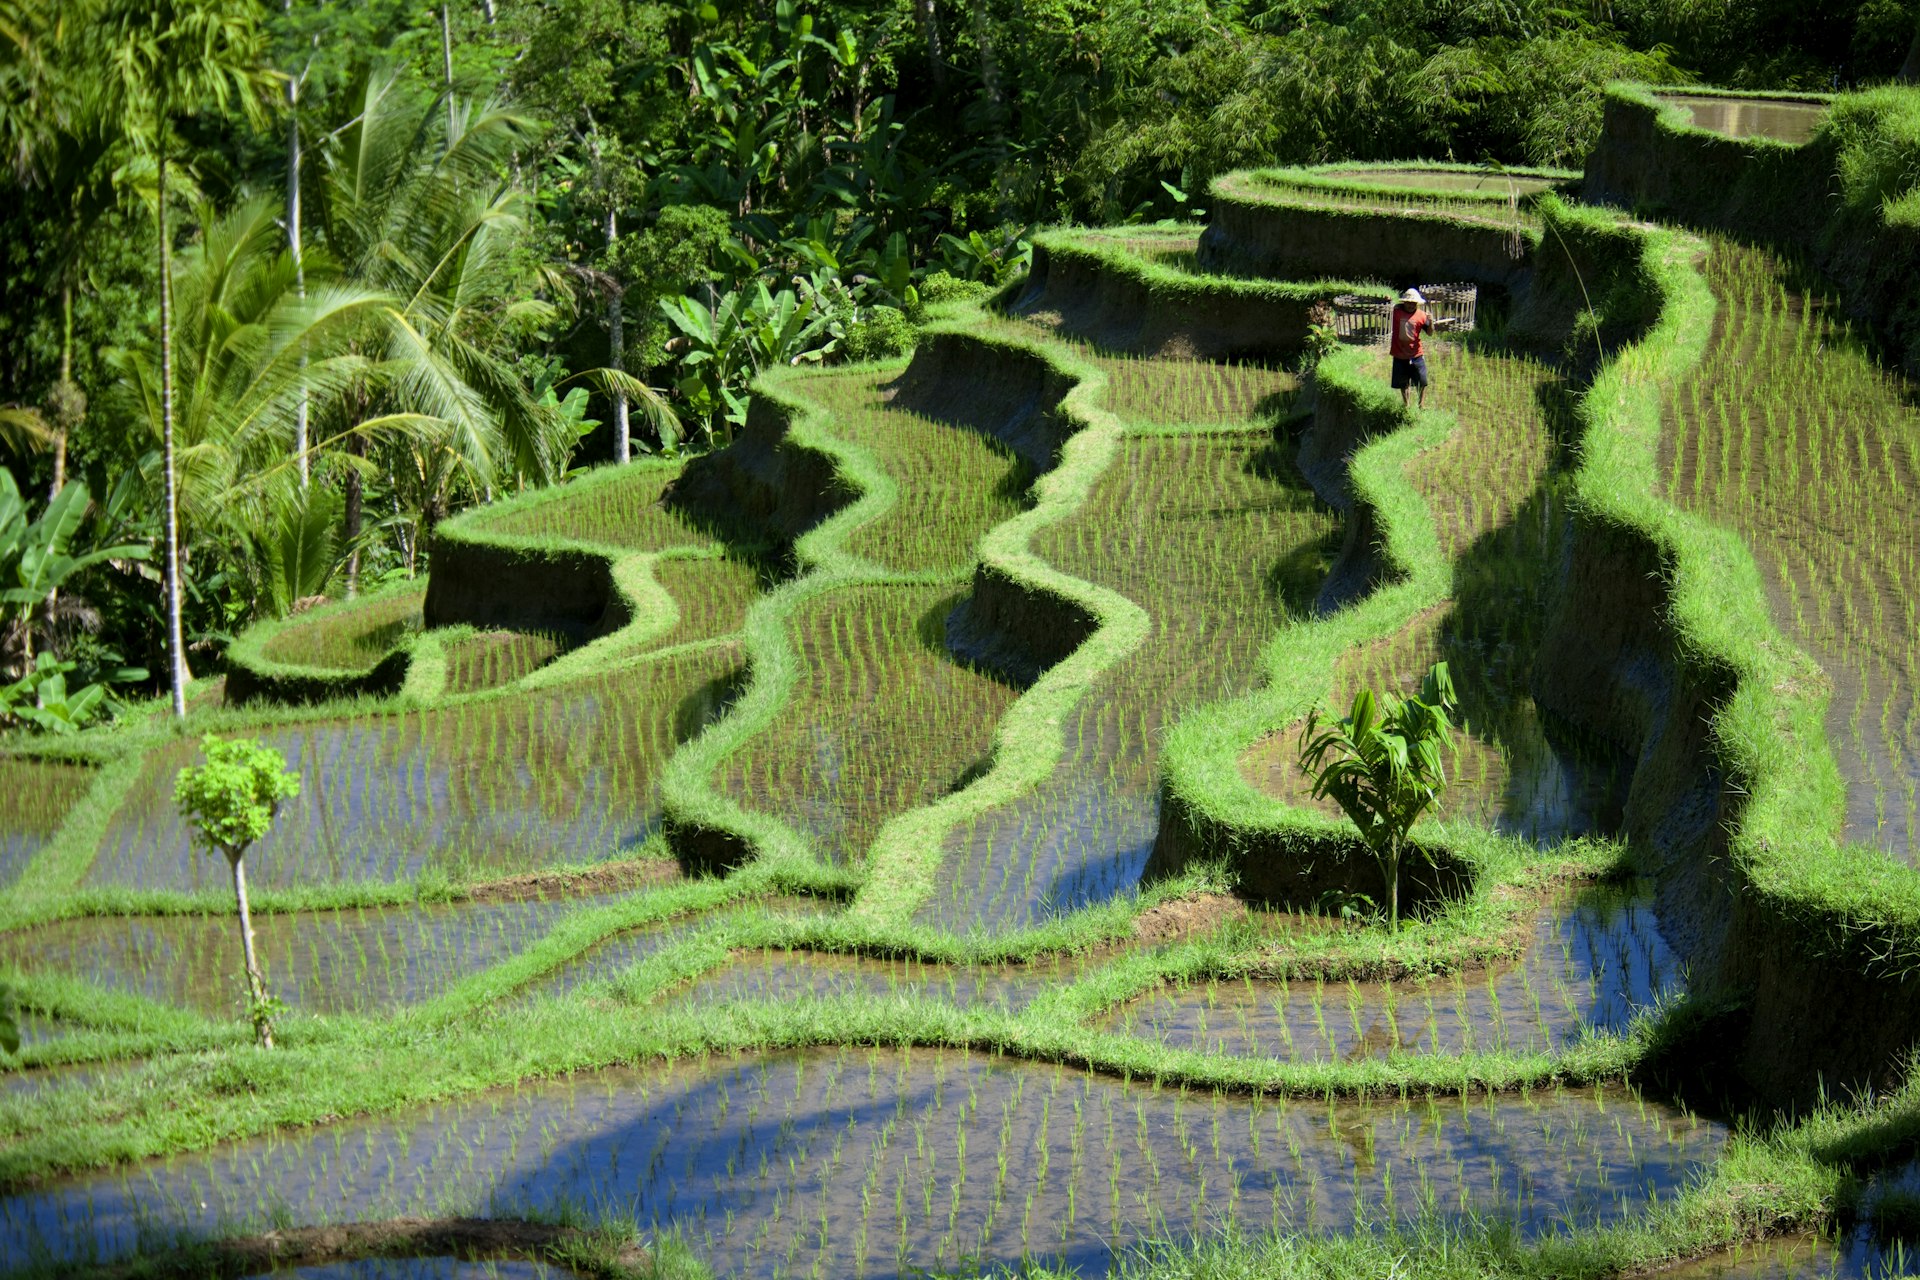 Rice paddy fields in Ubud, Bali